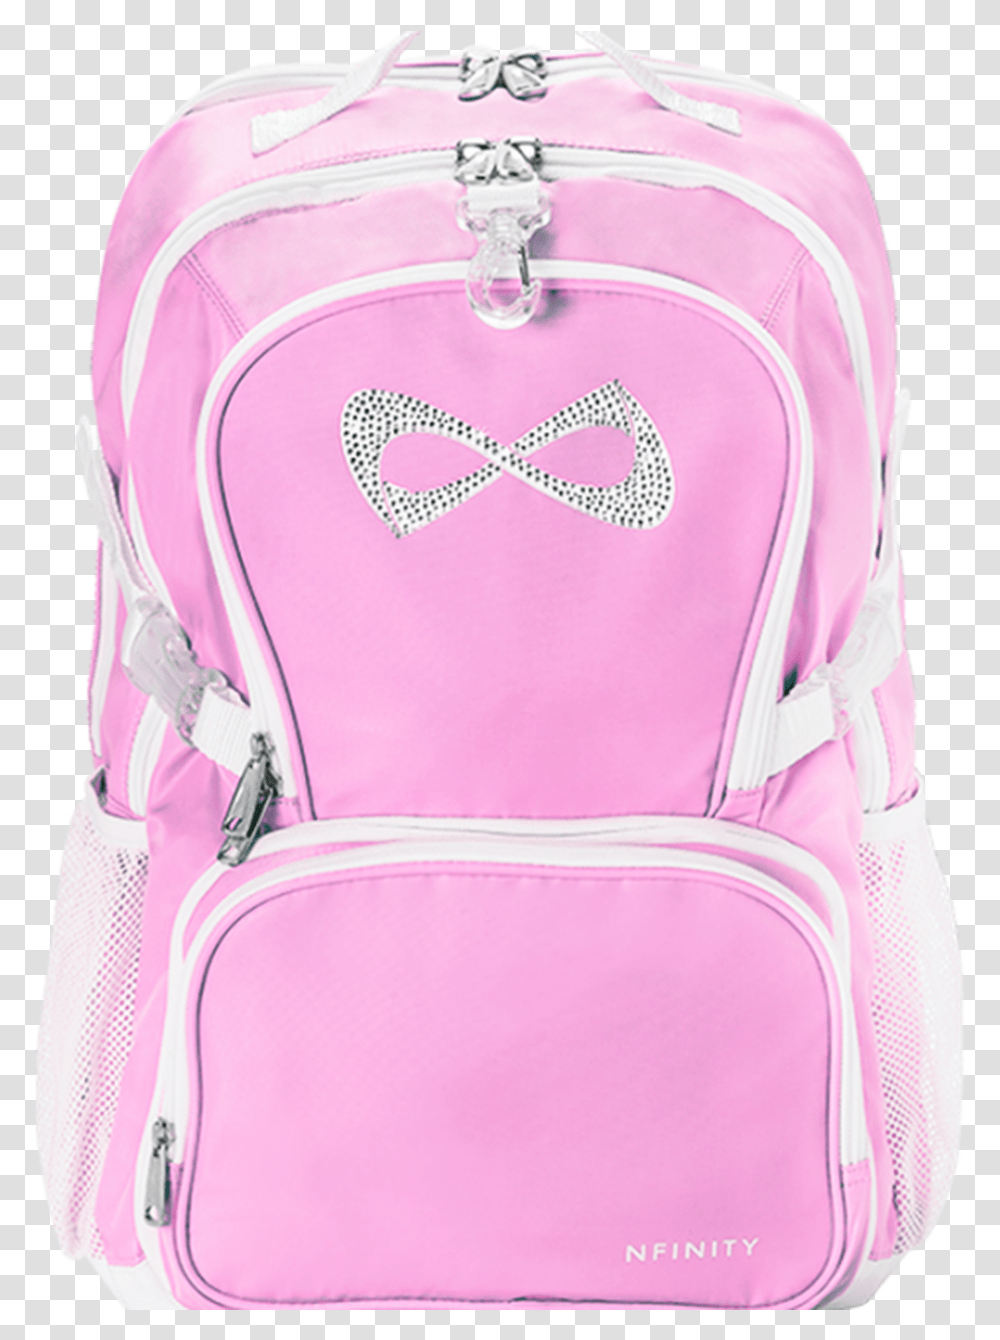 Pink Princess Nfinity Backpack, Bag Transparent Png